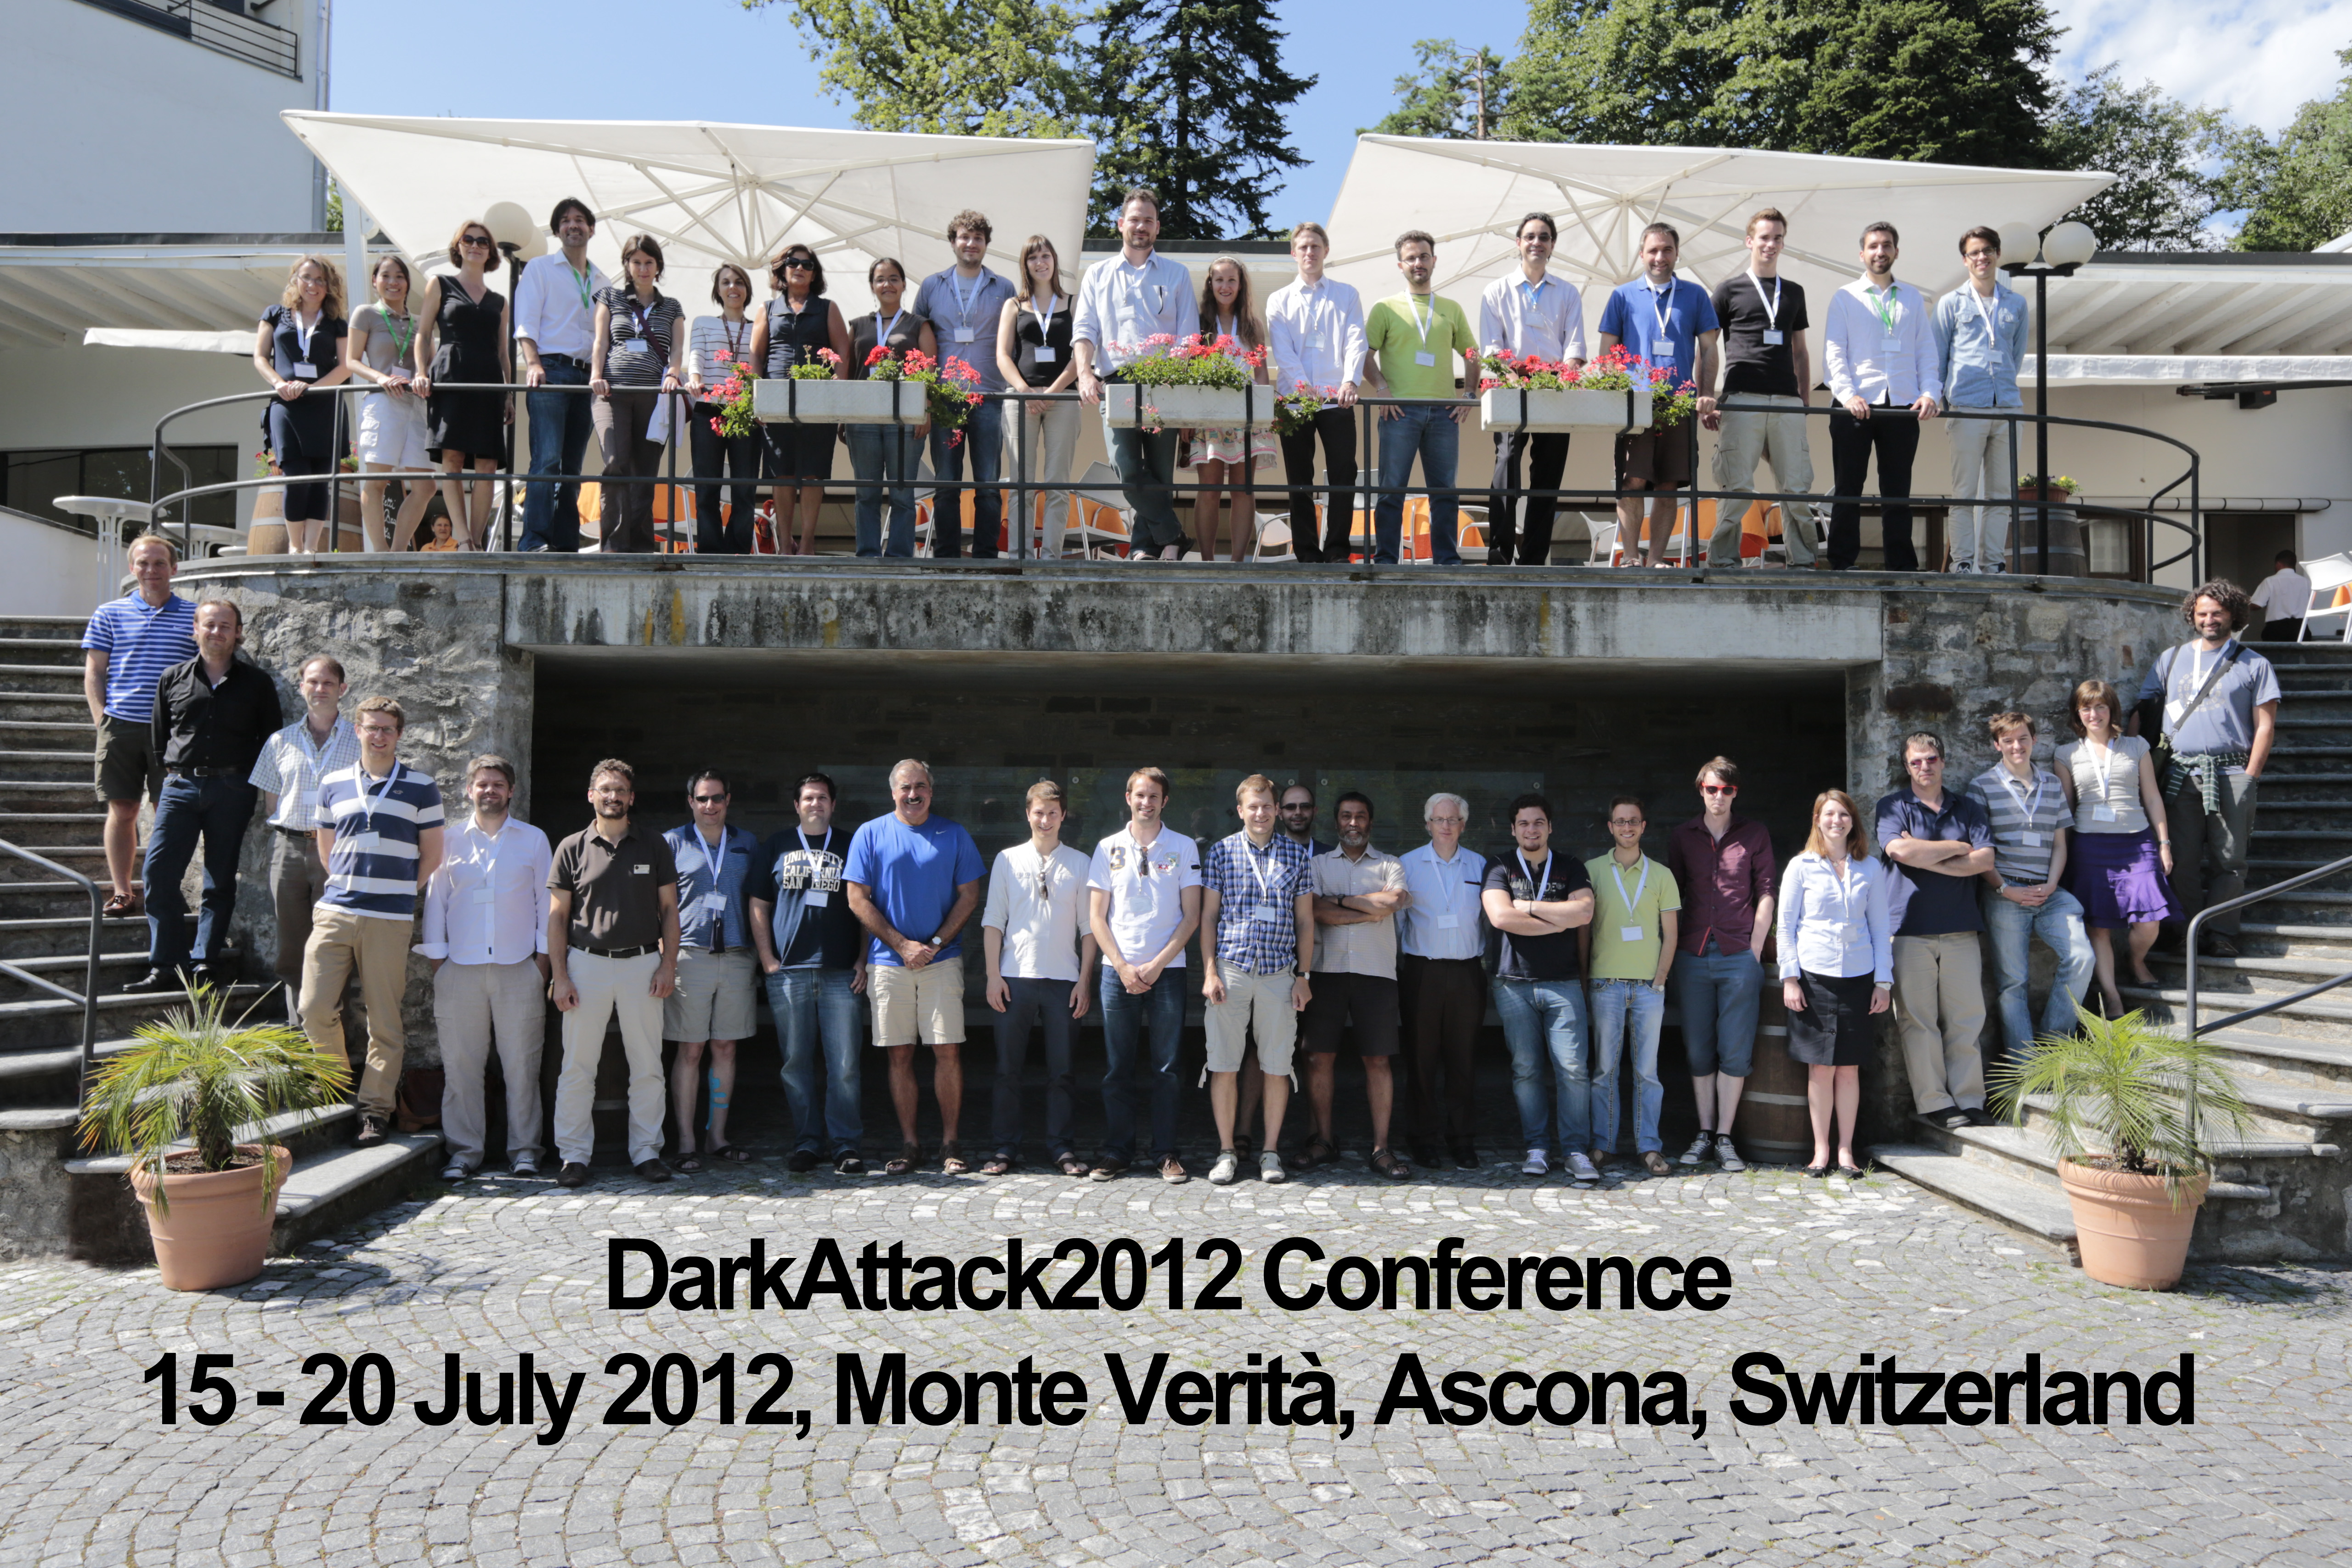 DarkAttack Group